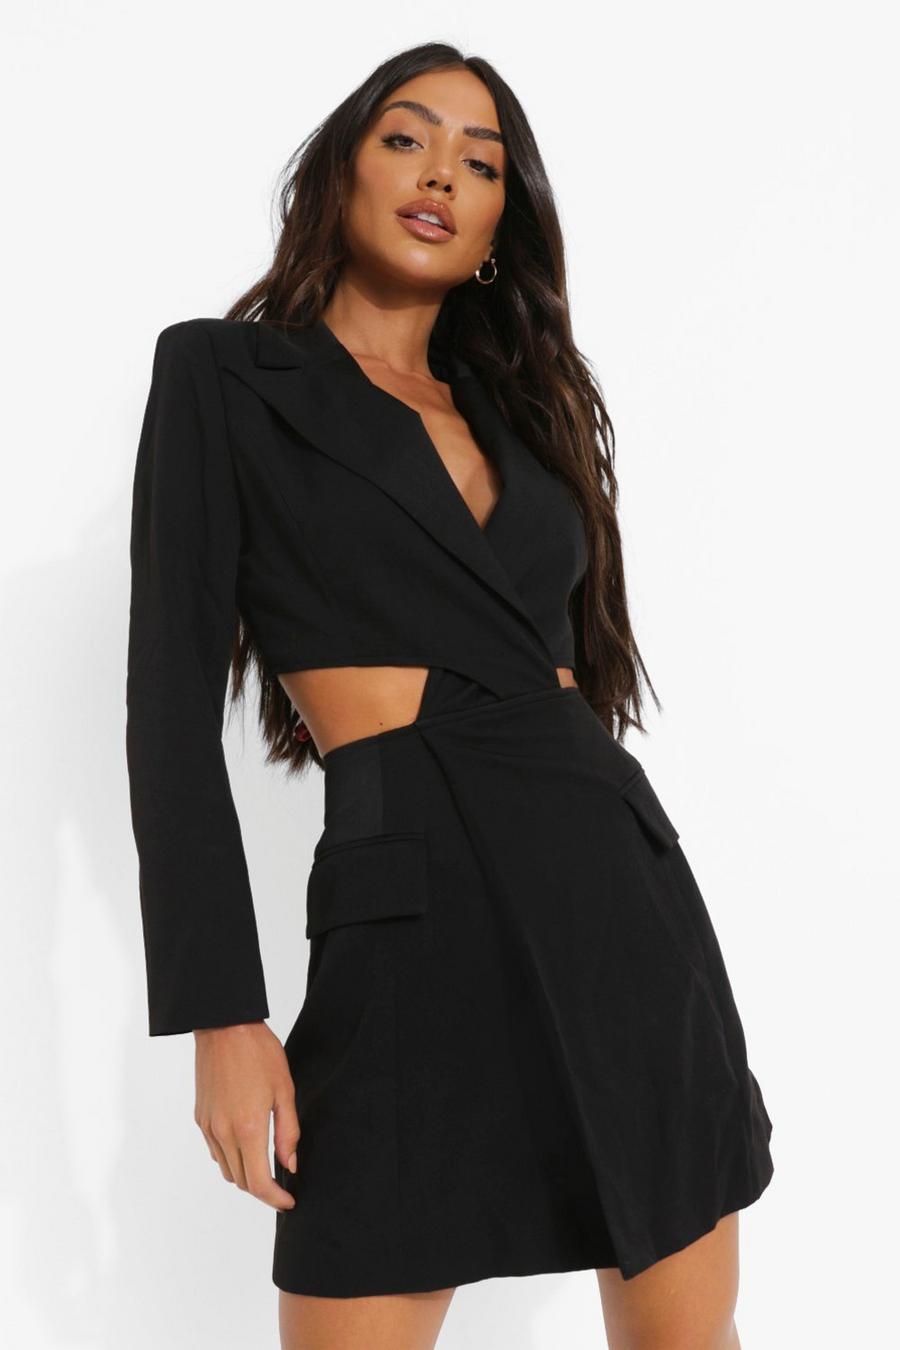 https://media.boohoo.com/i/boohoo/fzz10662_black_xl/female-black-twist-cut-out-pocket-detail-blazer-dress/?w=900&qlt=default&fmt.jp2.qlt=70&fmt=auto&sm=fit